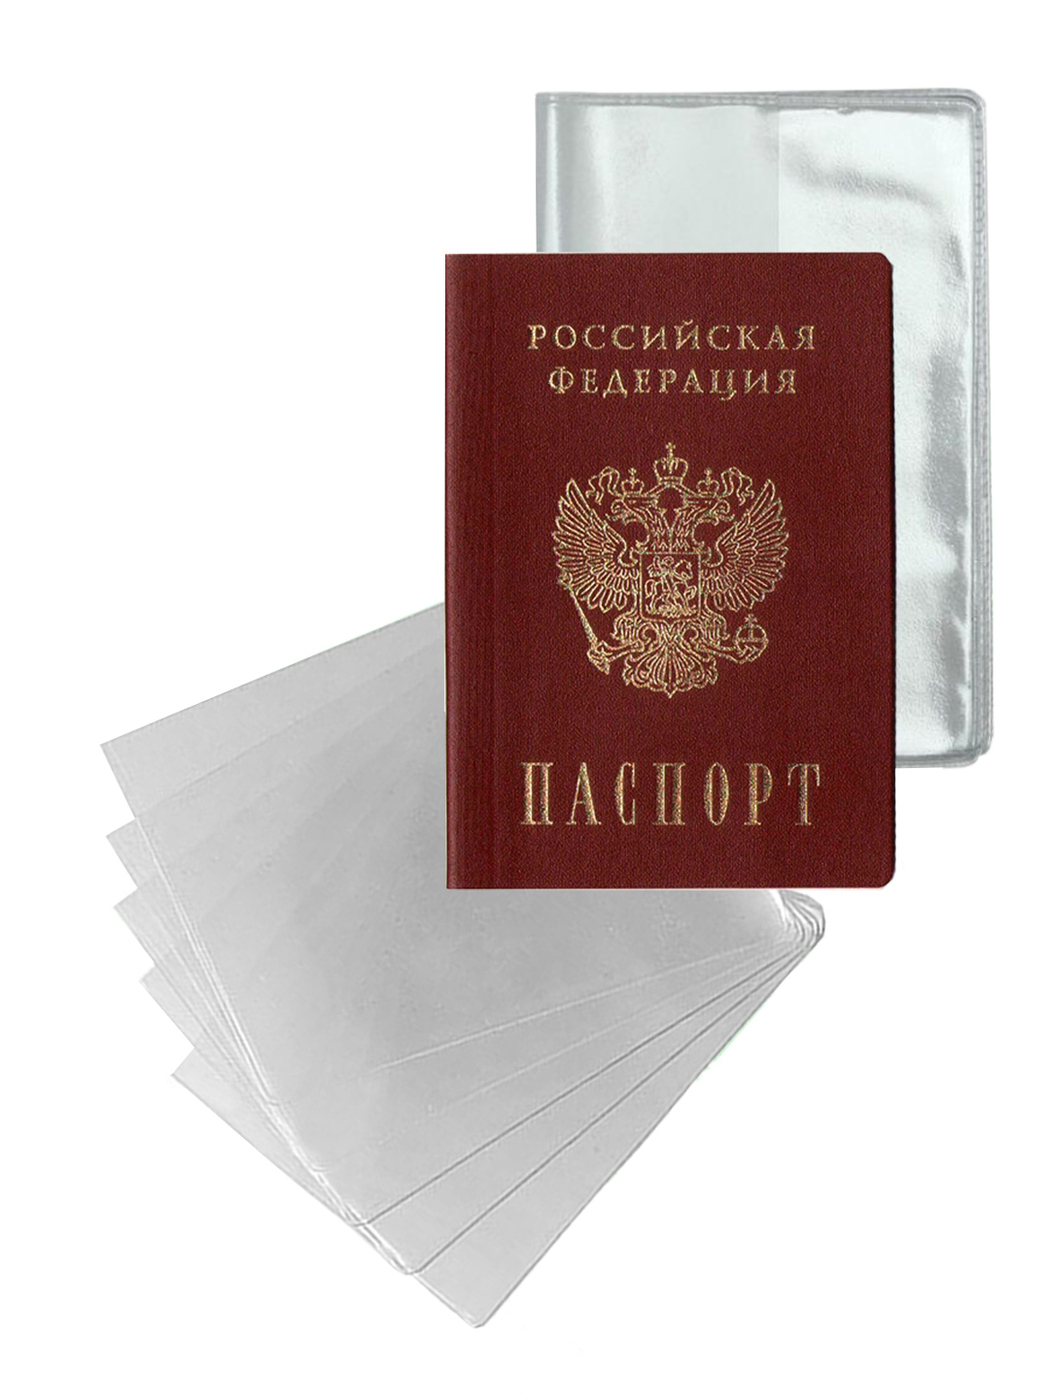 Можно Ли Показывать Фото Паспорта В Магазине